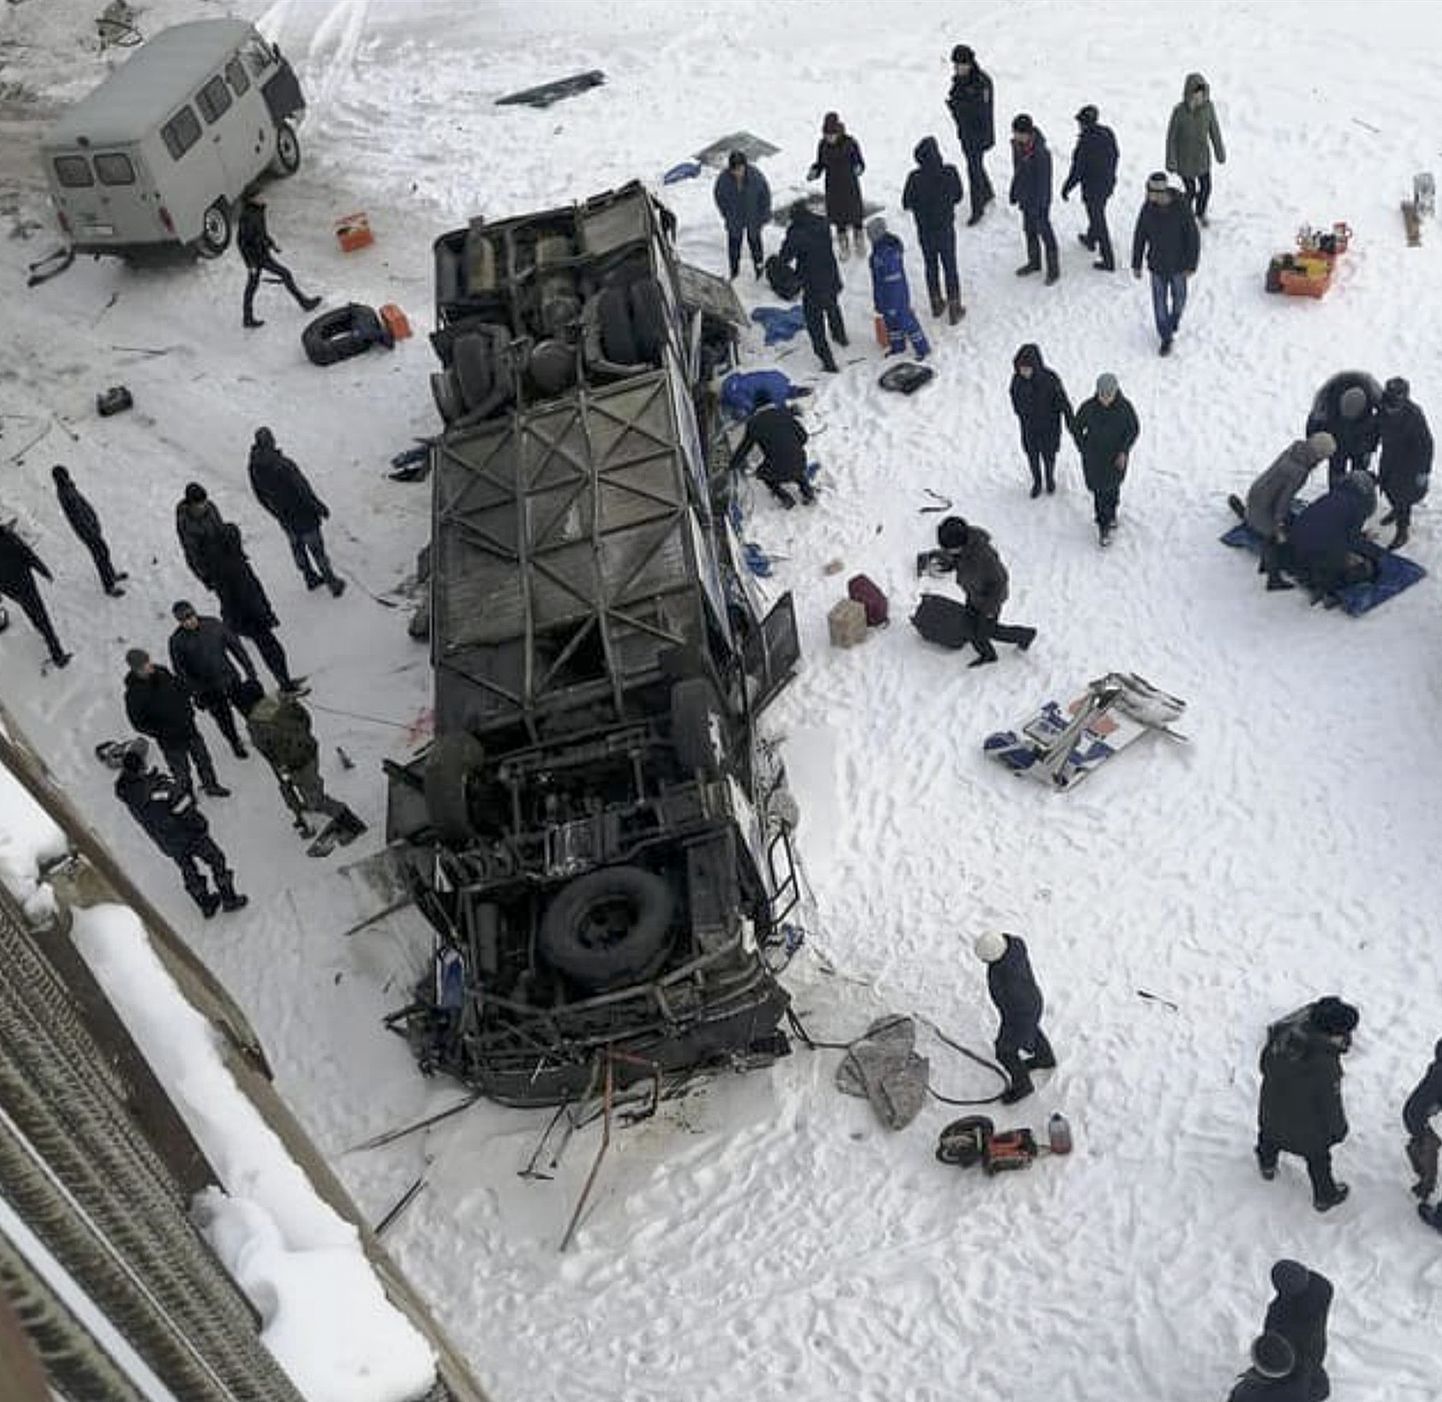 Venemaal Siberis kukkus buss Kuenga jõe sillalt jõejääle, hukkus 19 inimest.